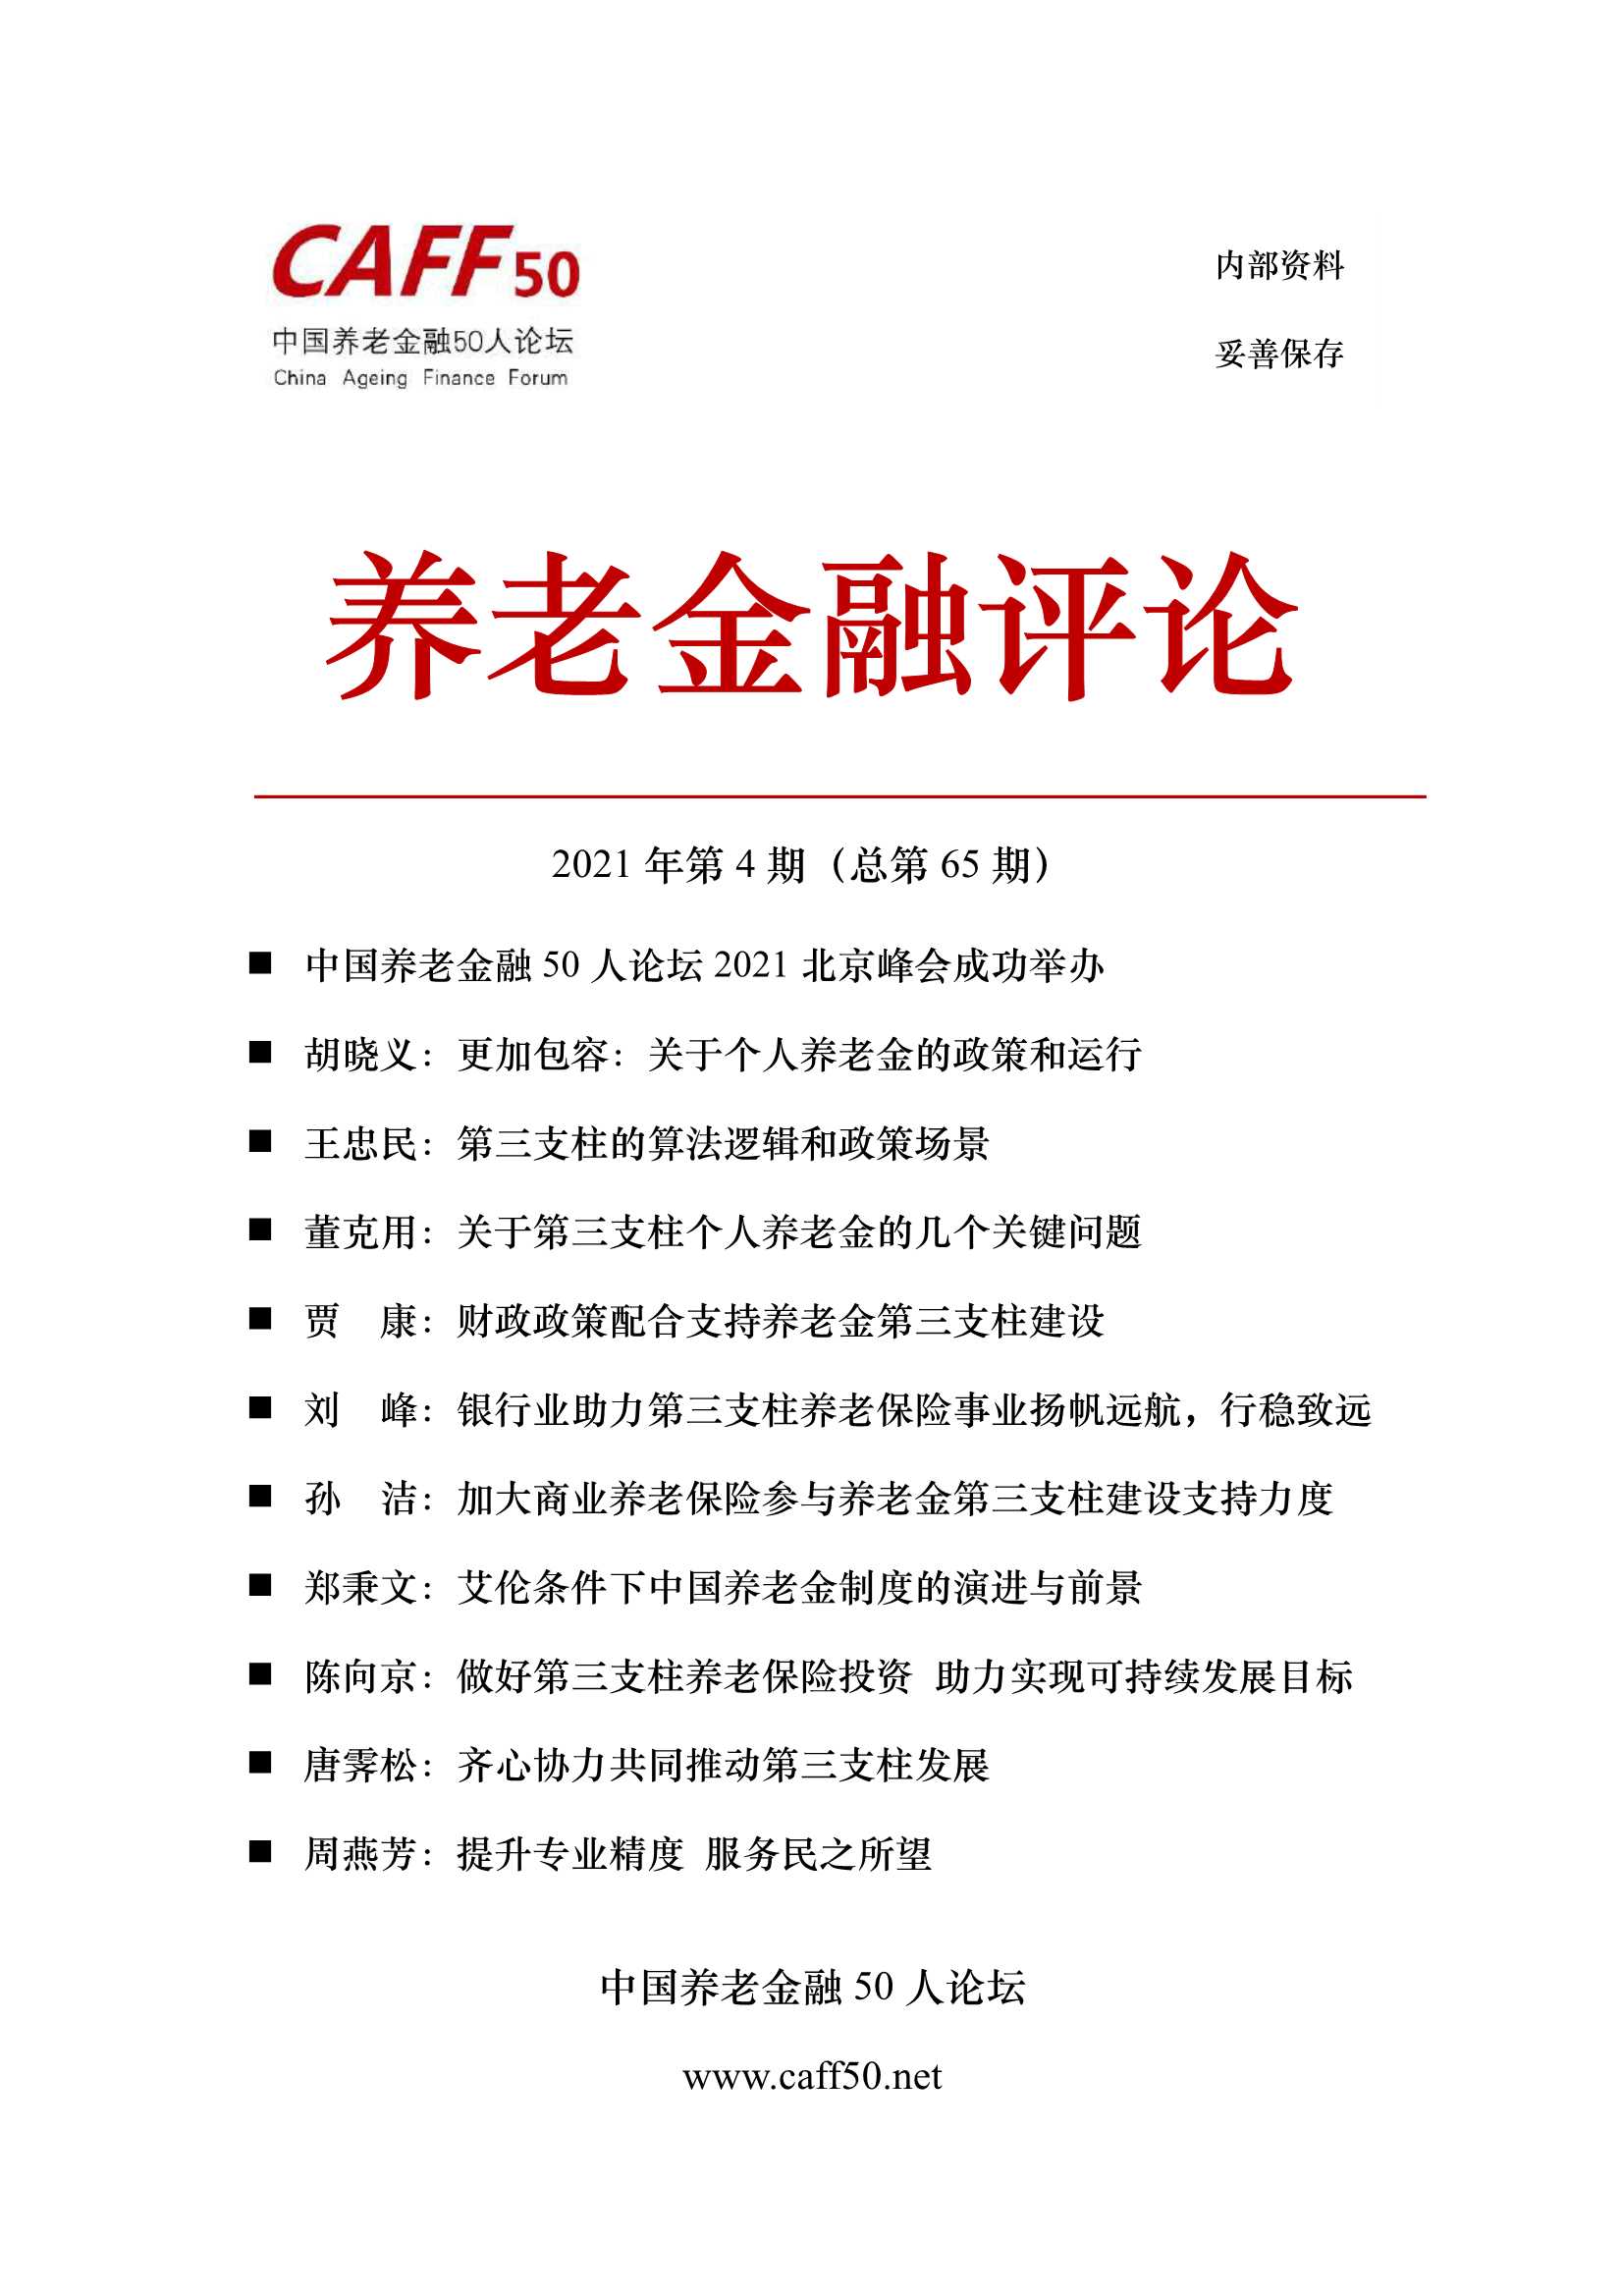 中国养老金融50人论坛-2021年第4期《养老金融评论》内容概要-2021.04-80页